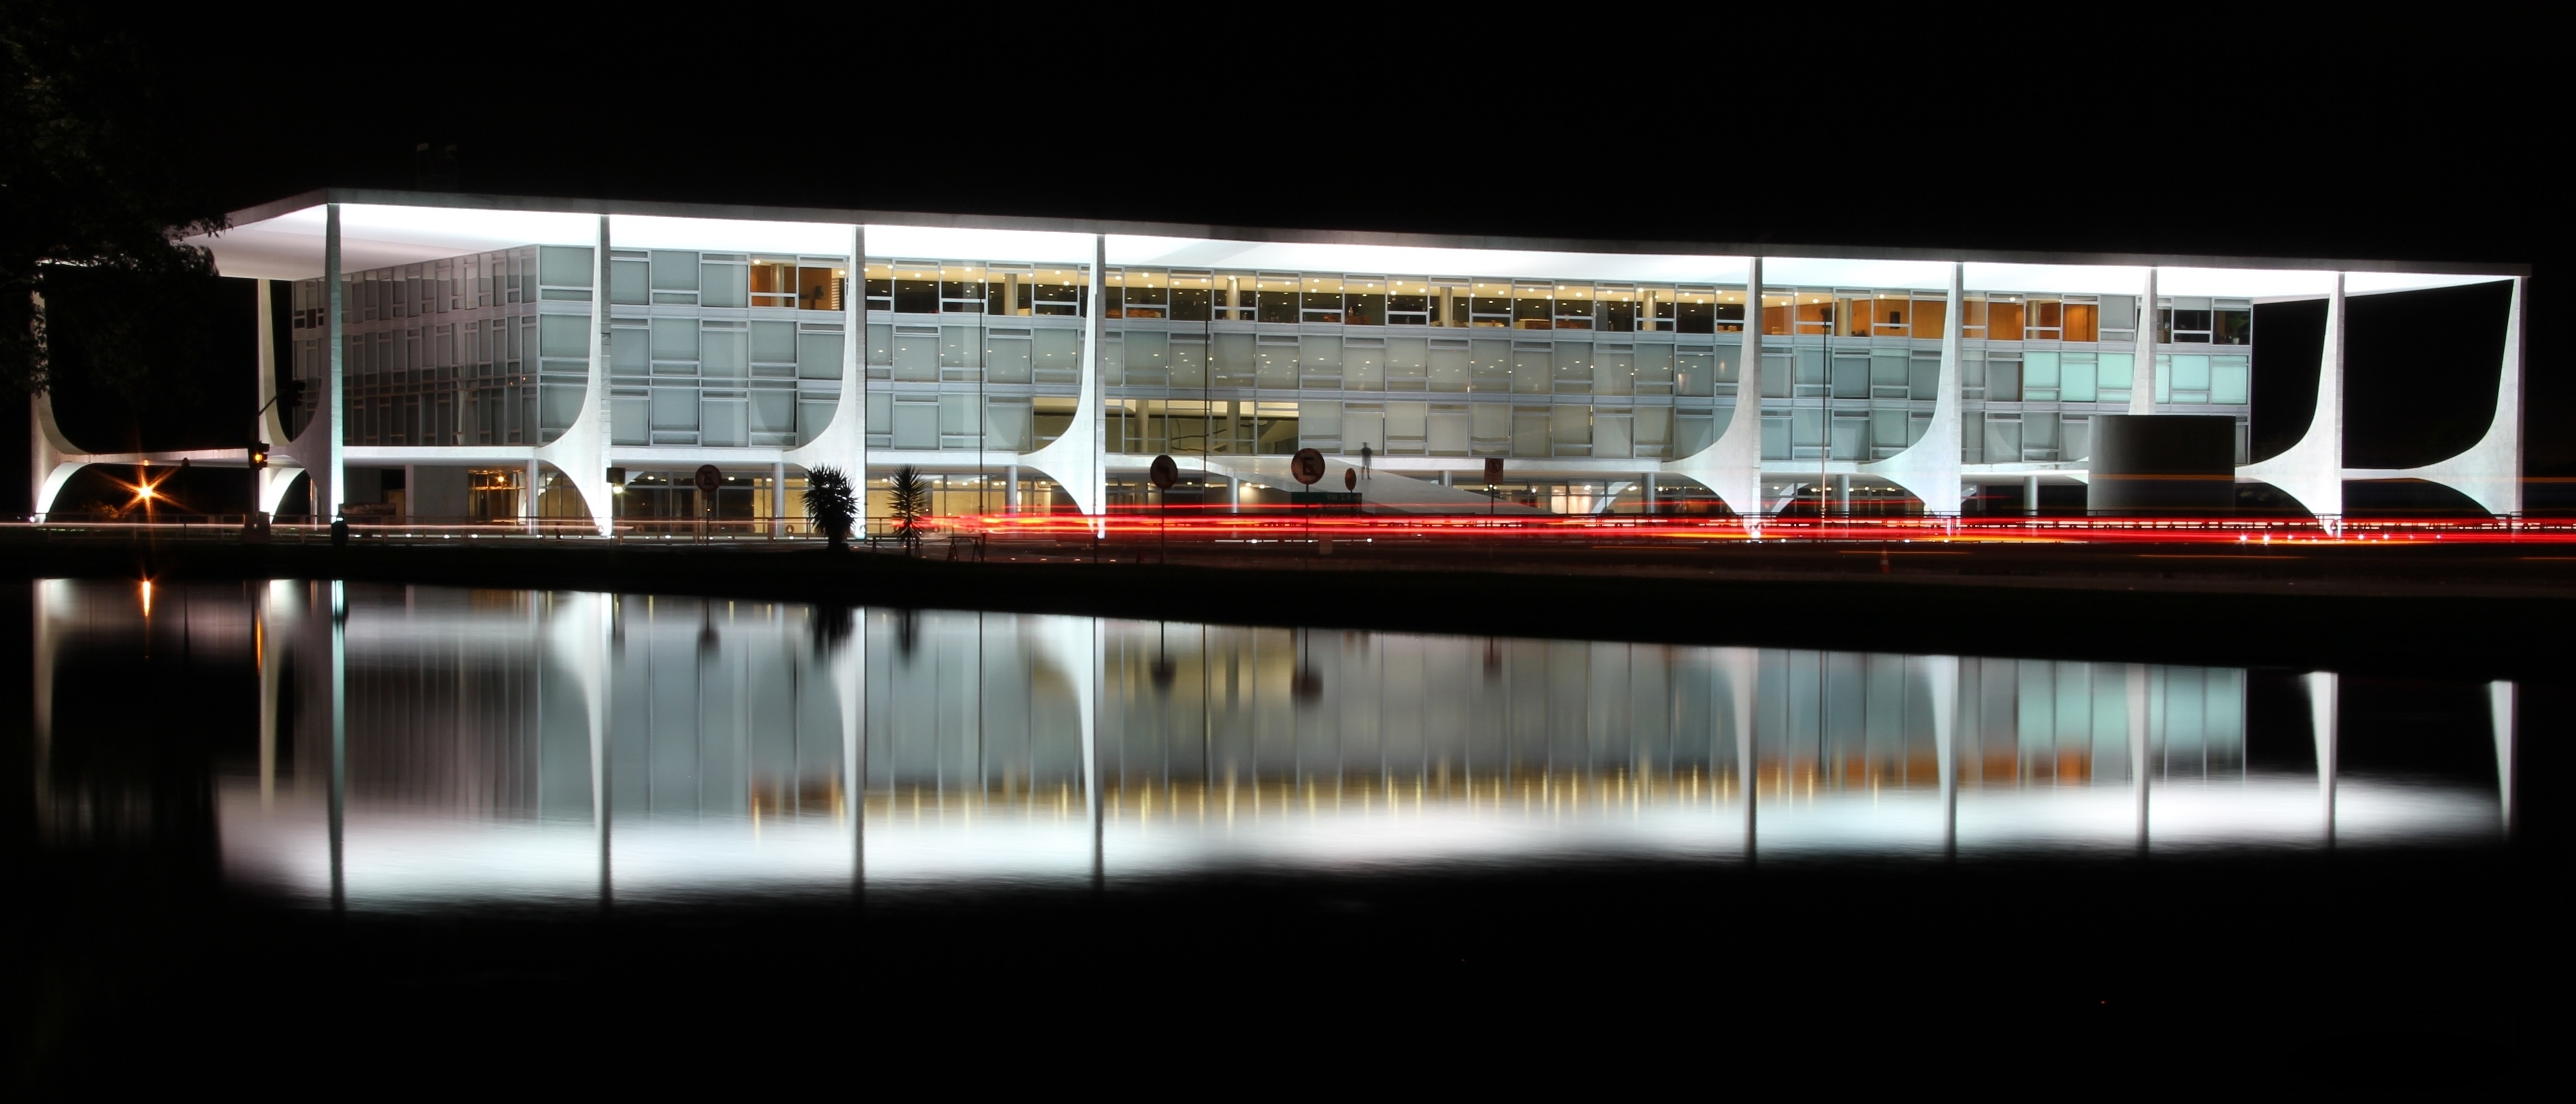 O local de trabalho do executivo máximo do Brasil, o Palácio do Planalto. Além do presidente, uma grande equipe ocupa essa imensa construção (Foto: Gisele Pasquali/Wikimedia)